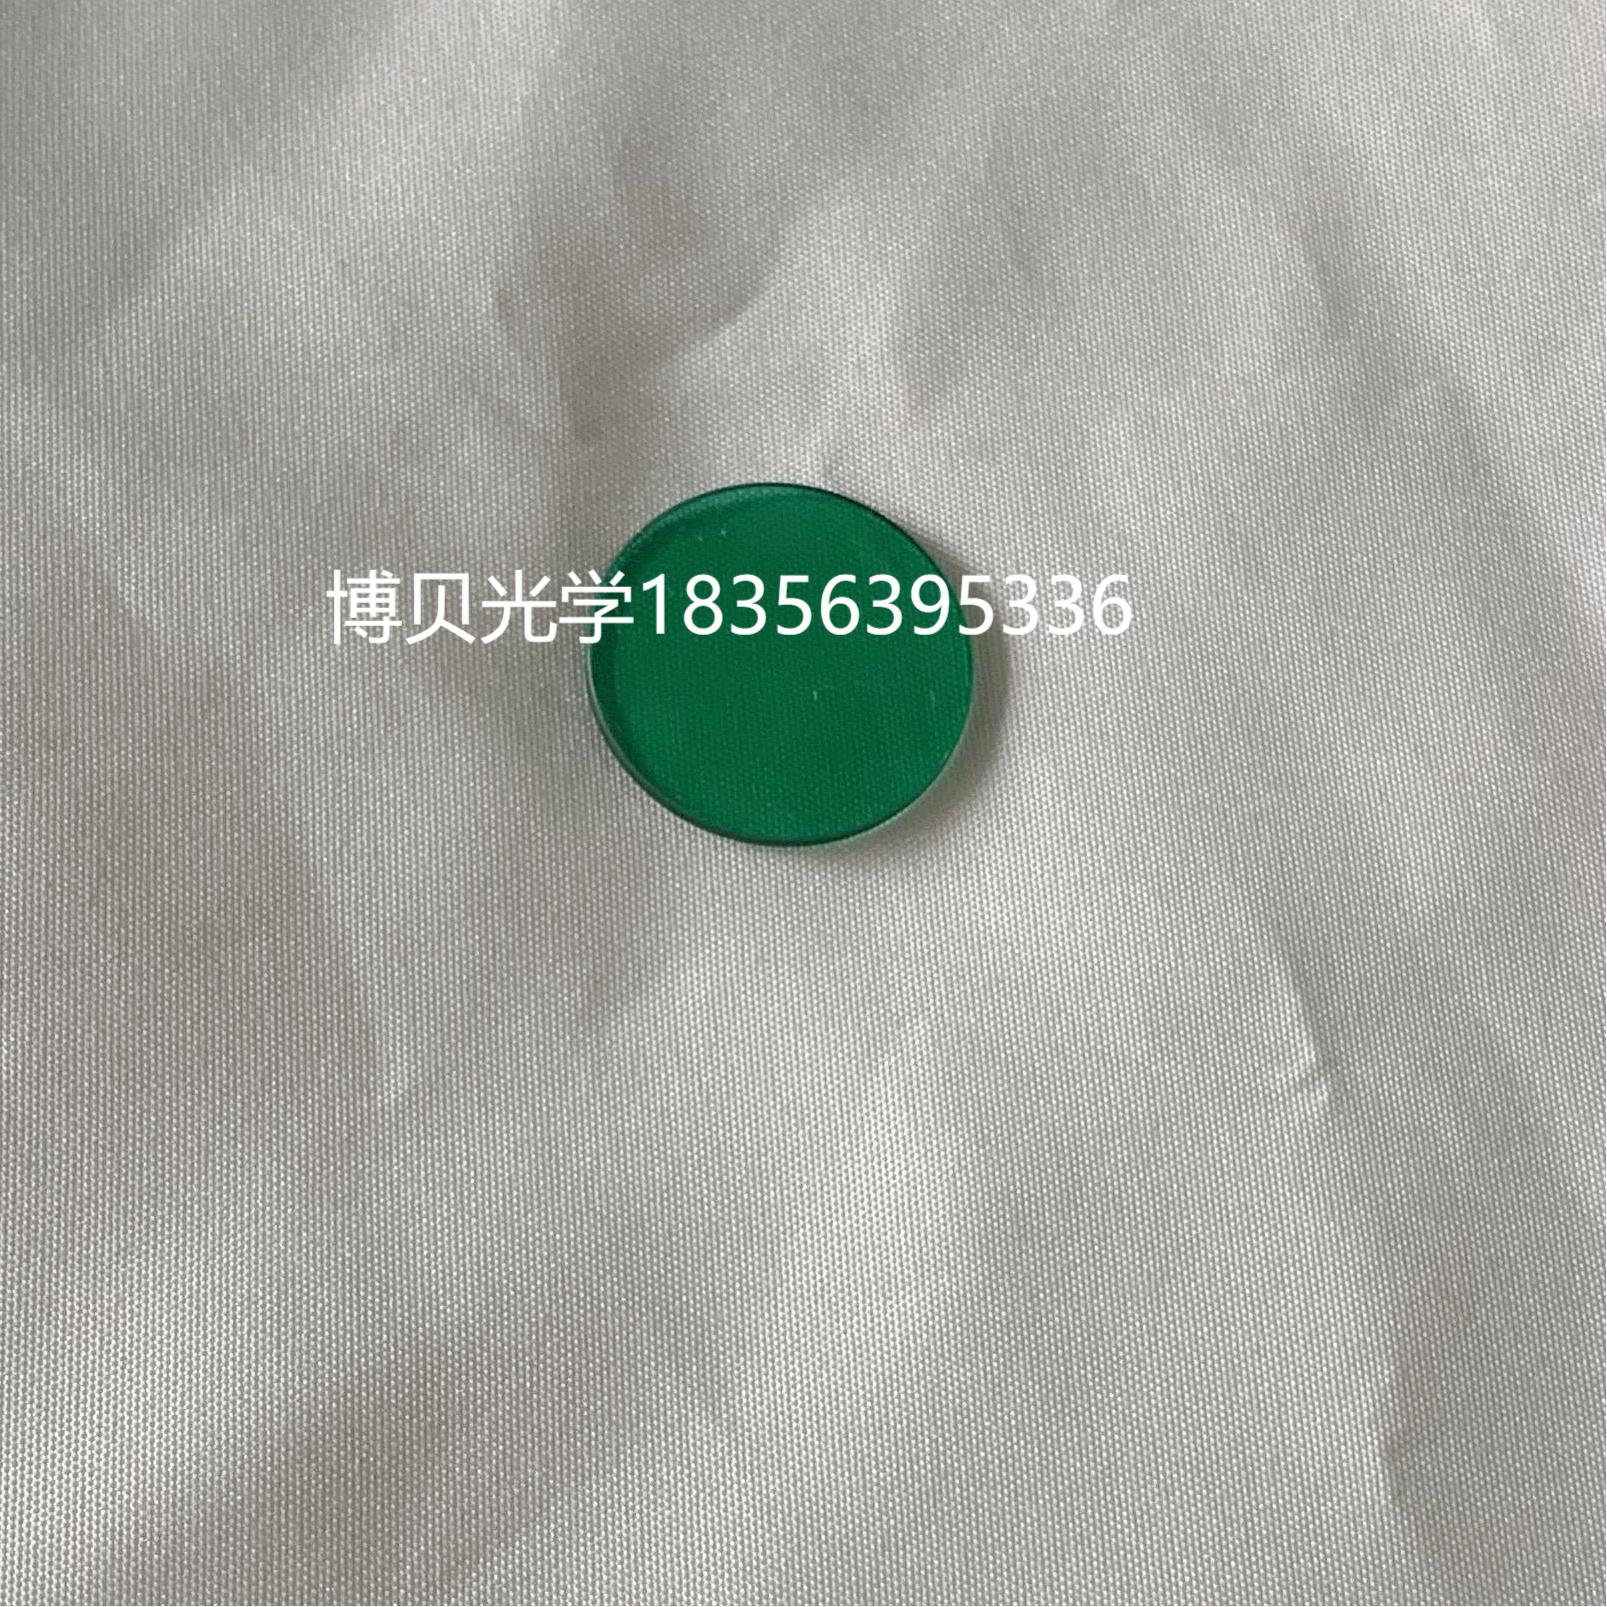 北京四维赛洋原装绿色滤光片 阴道镜专用滤光片 荧光激发滤光片